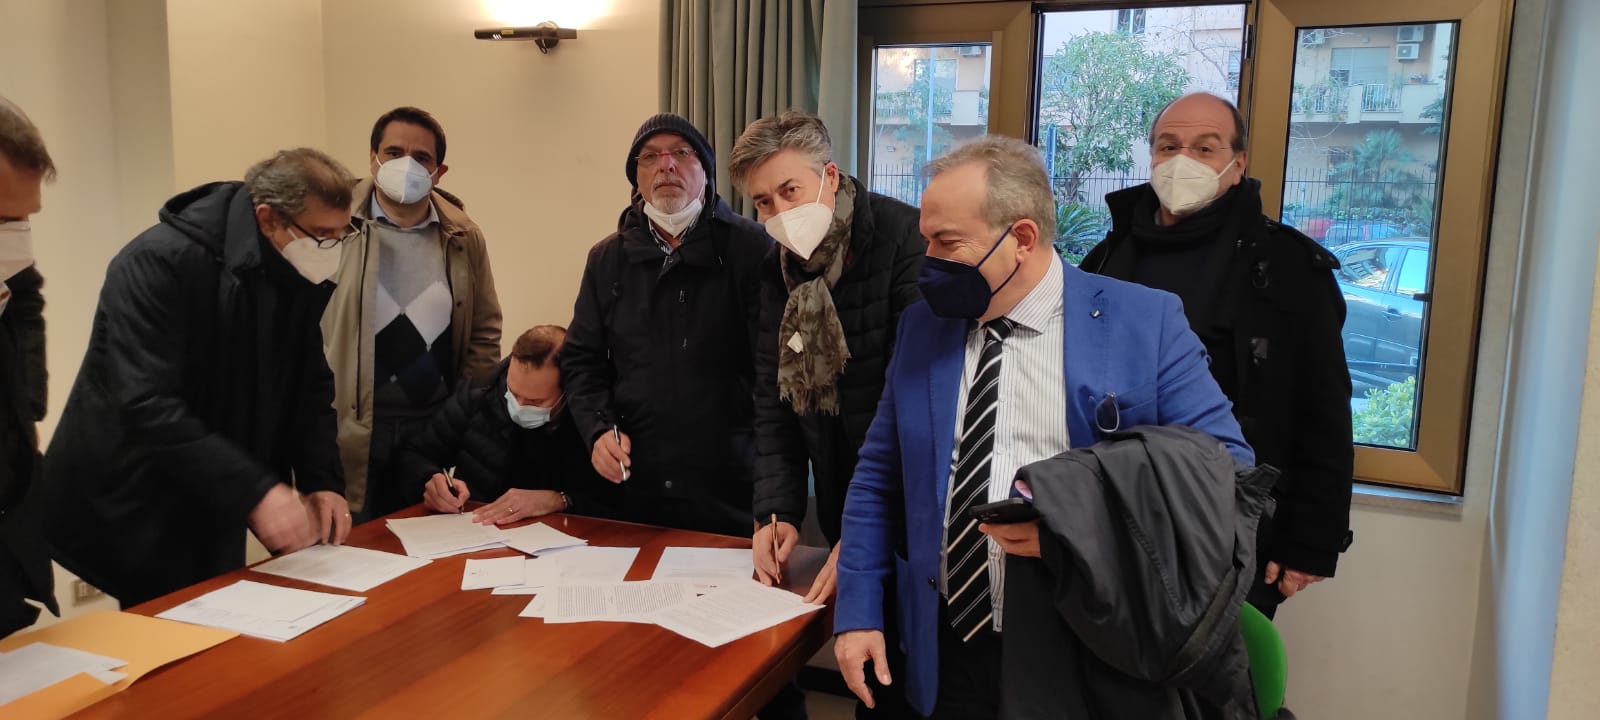 Firma del nuovo contratto per i dirigenti regionali, Mannino e Agliozzo: importante traguardo ma resta qualche elemento di criticità